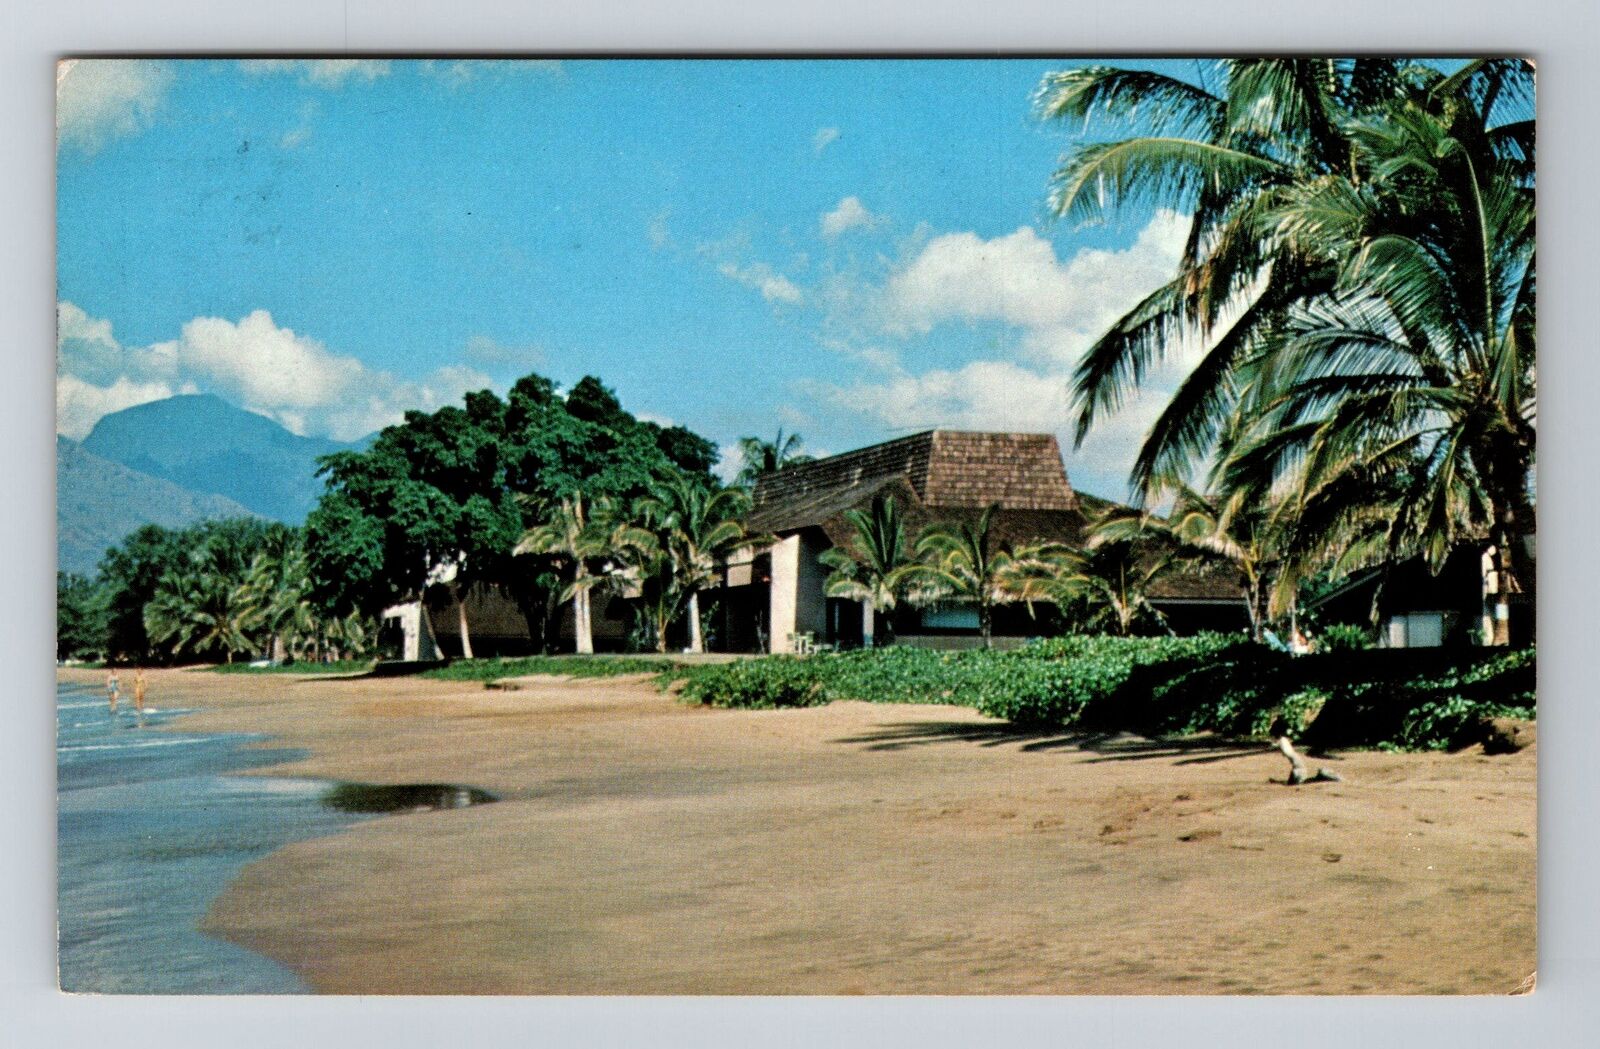 Maui HI-Hawaii, Maalaea Surf Resort, Exterior, Vintage Postcard